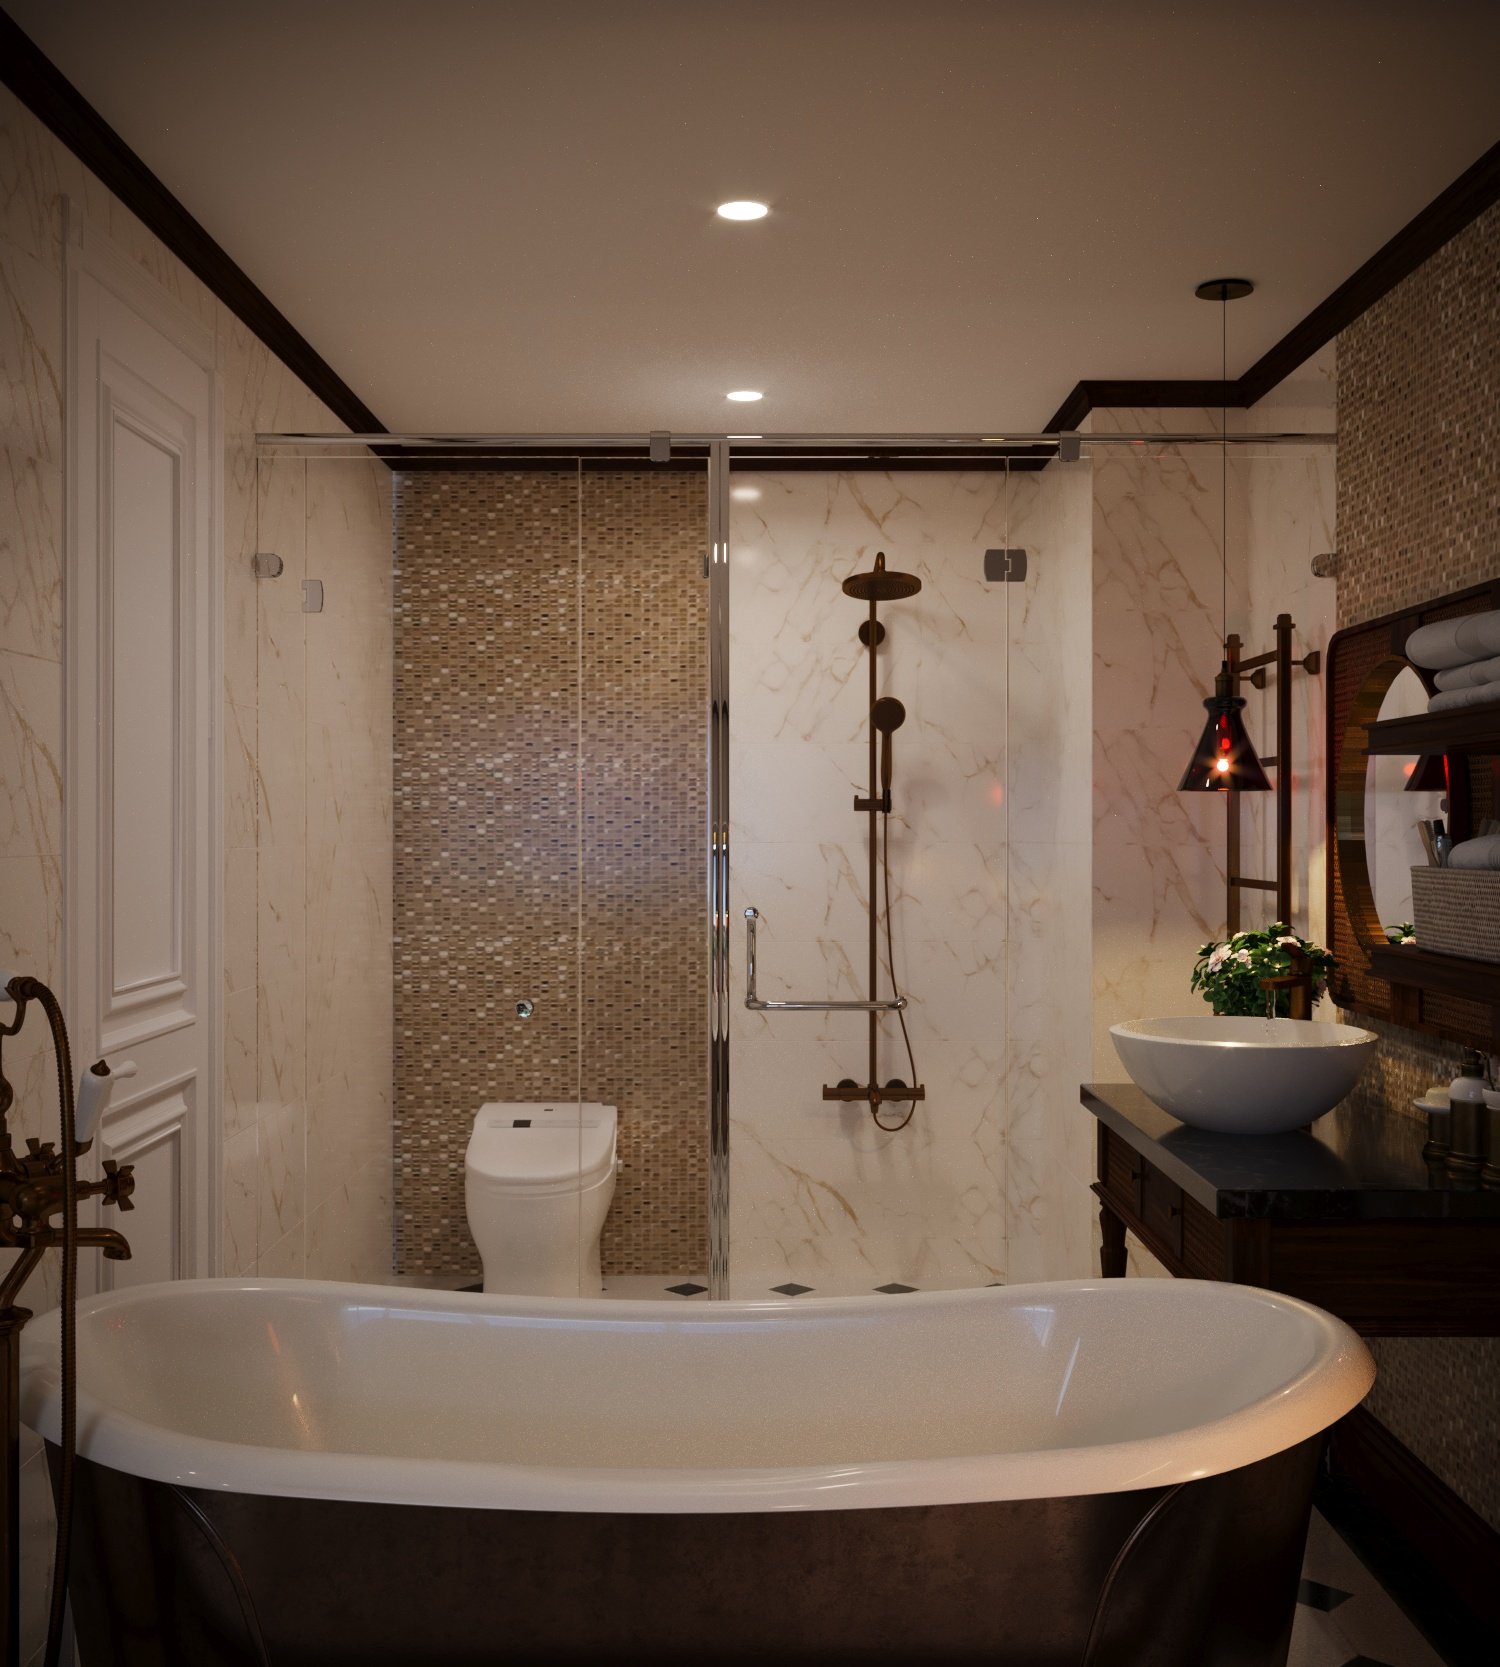 Phòng tắm, phong cách Indochine Đông Dương, thiết kế concept nội thất, nhà phố Nguyễn Trãi Quận 5